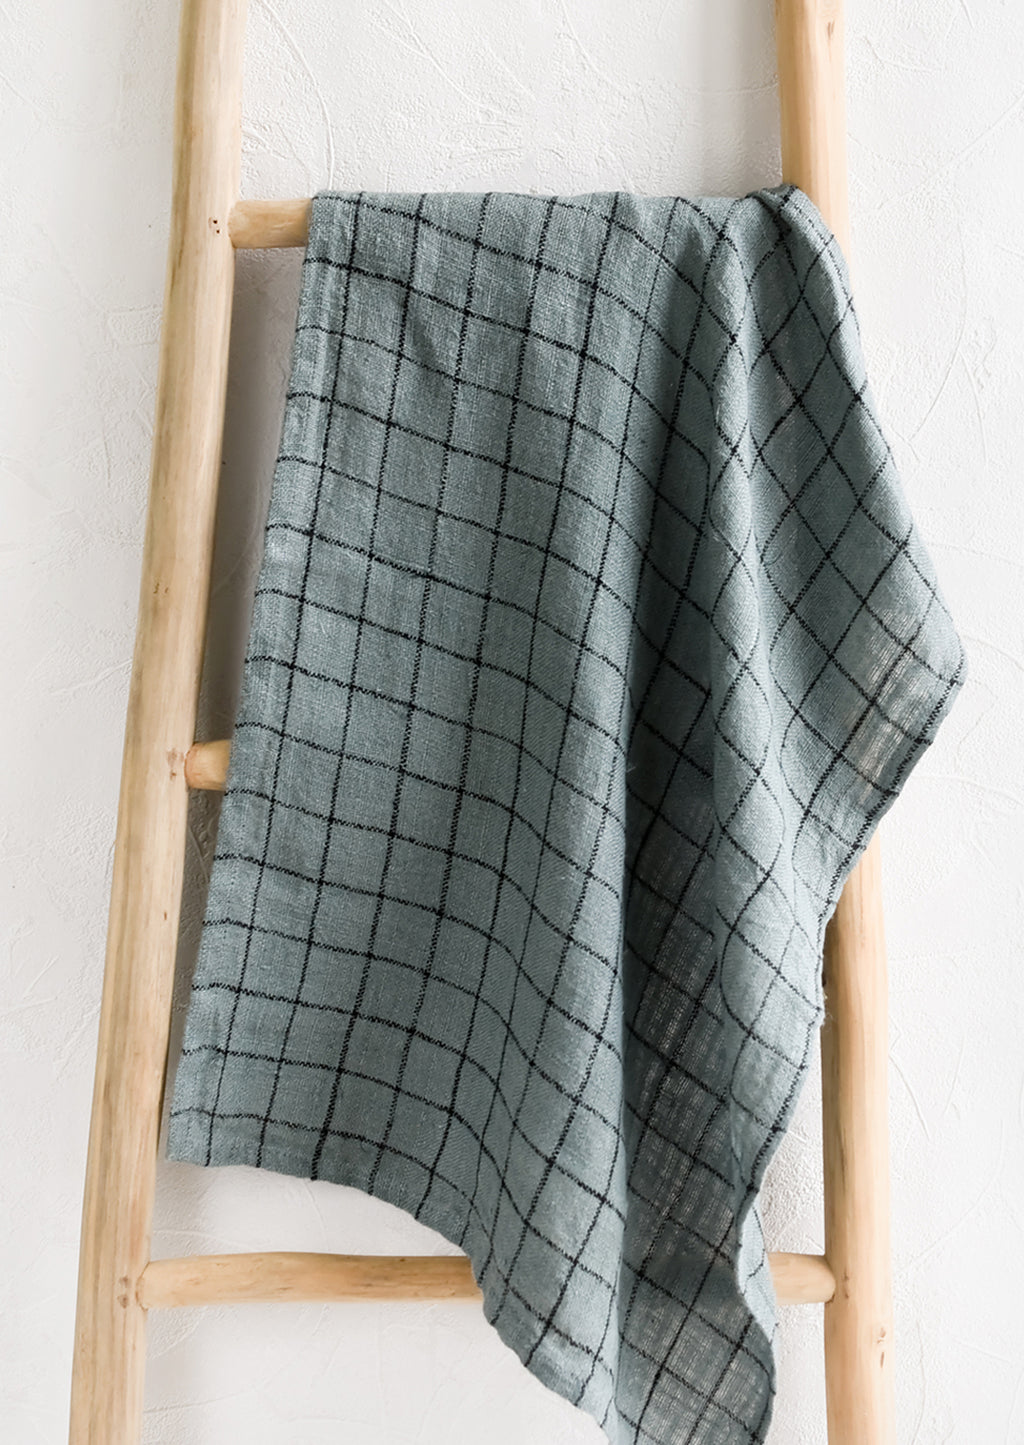 Dusty Blue: A woven tea towel in dusty blue with black grid pattern.